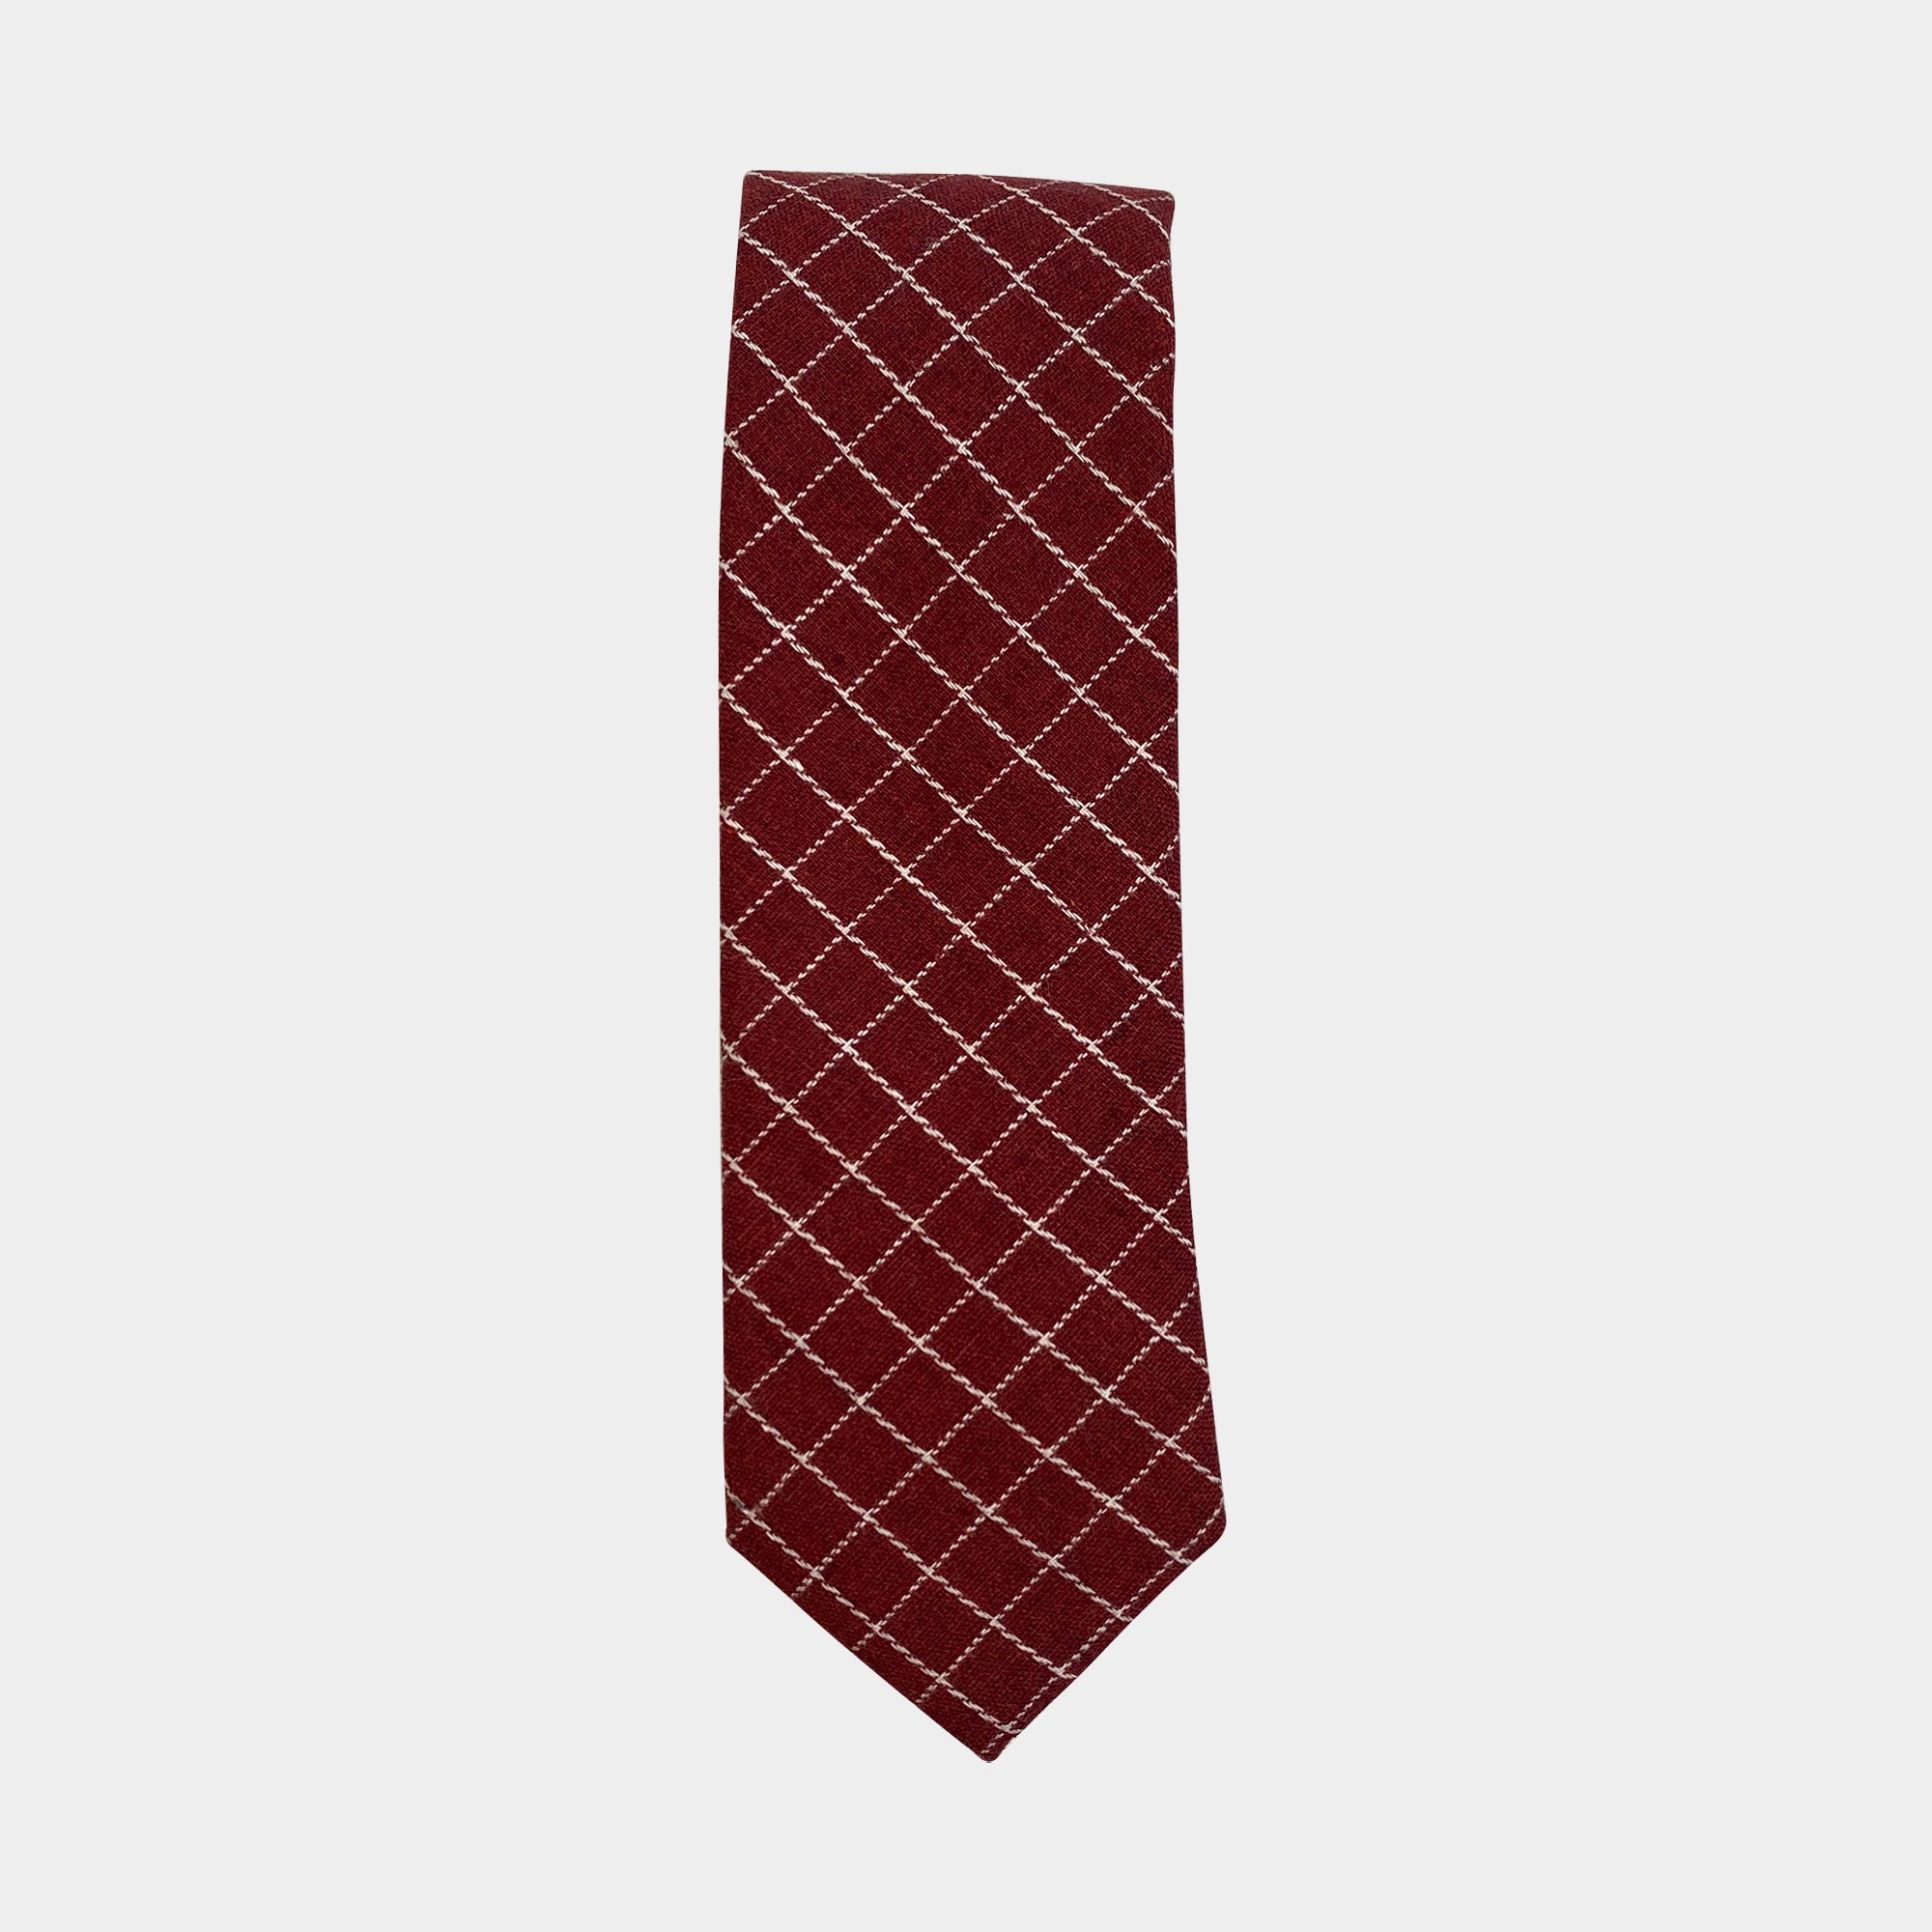 CLIFFORD - Men's Tie